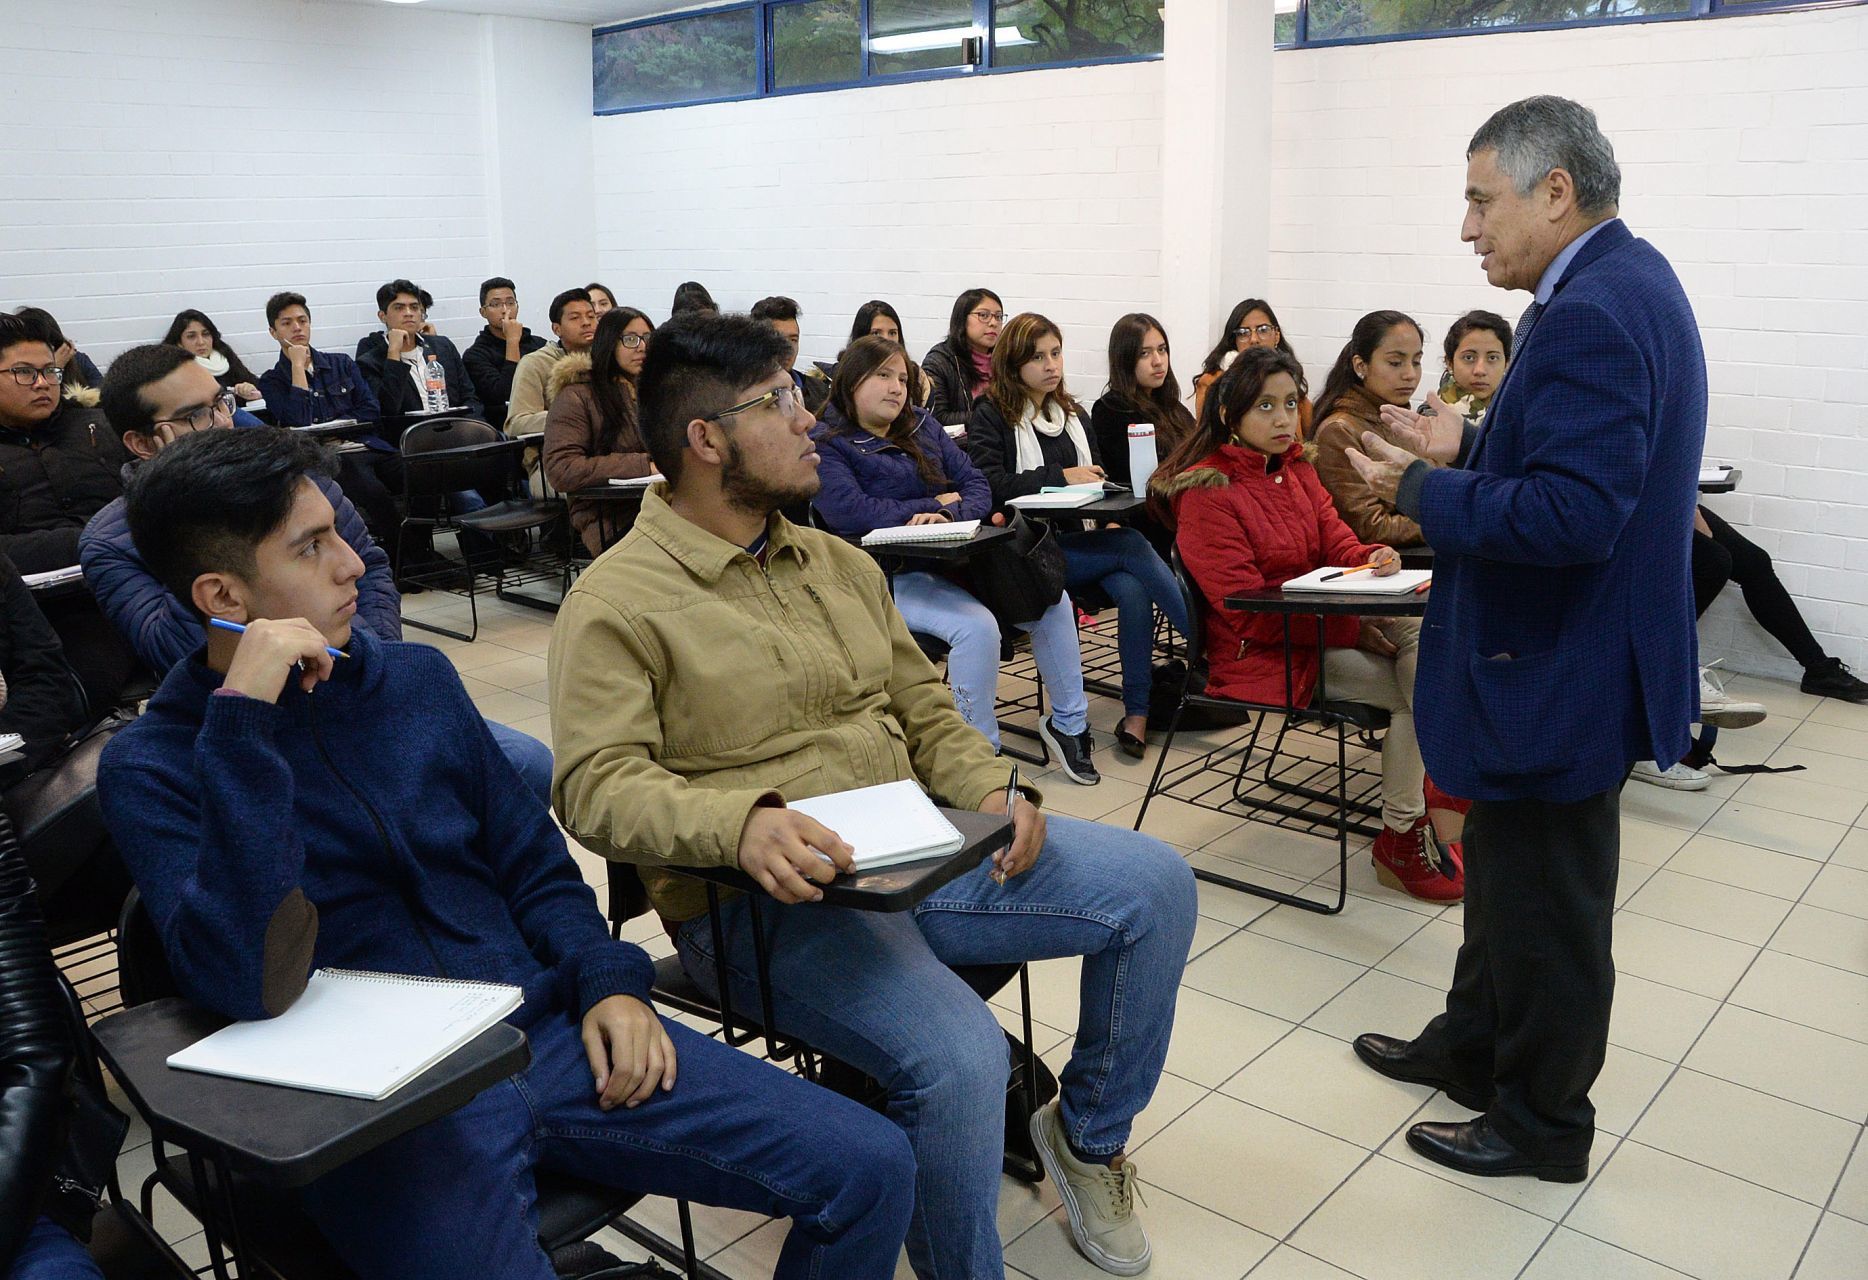 El apoyo es entregado por la Secretaría de Educación Pública (SEP) a través de la Coordinación Nacional de Becas para el Bienestar Benito Juárez (FOTO: UNAM /CUARTOSCURO.COM)